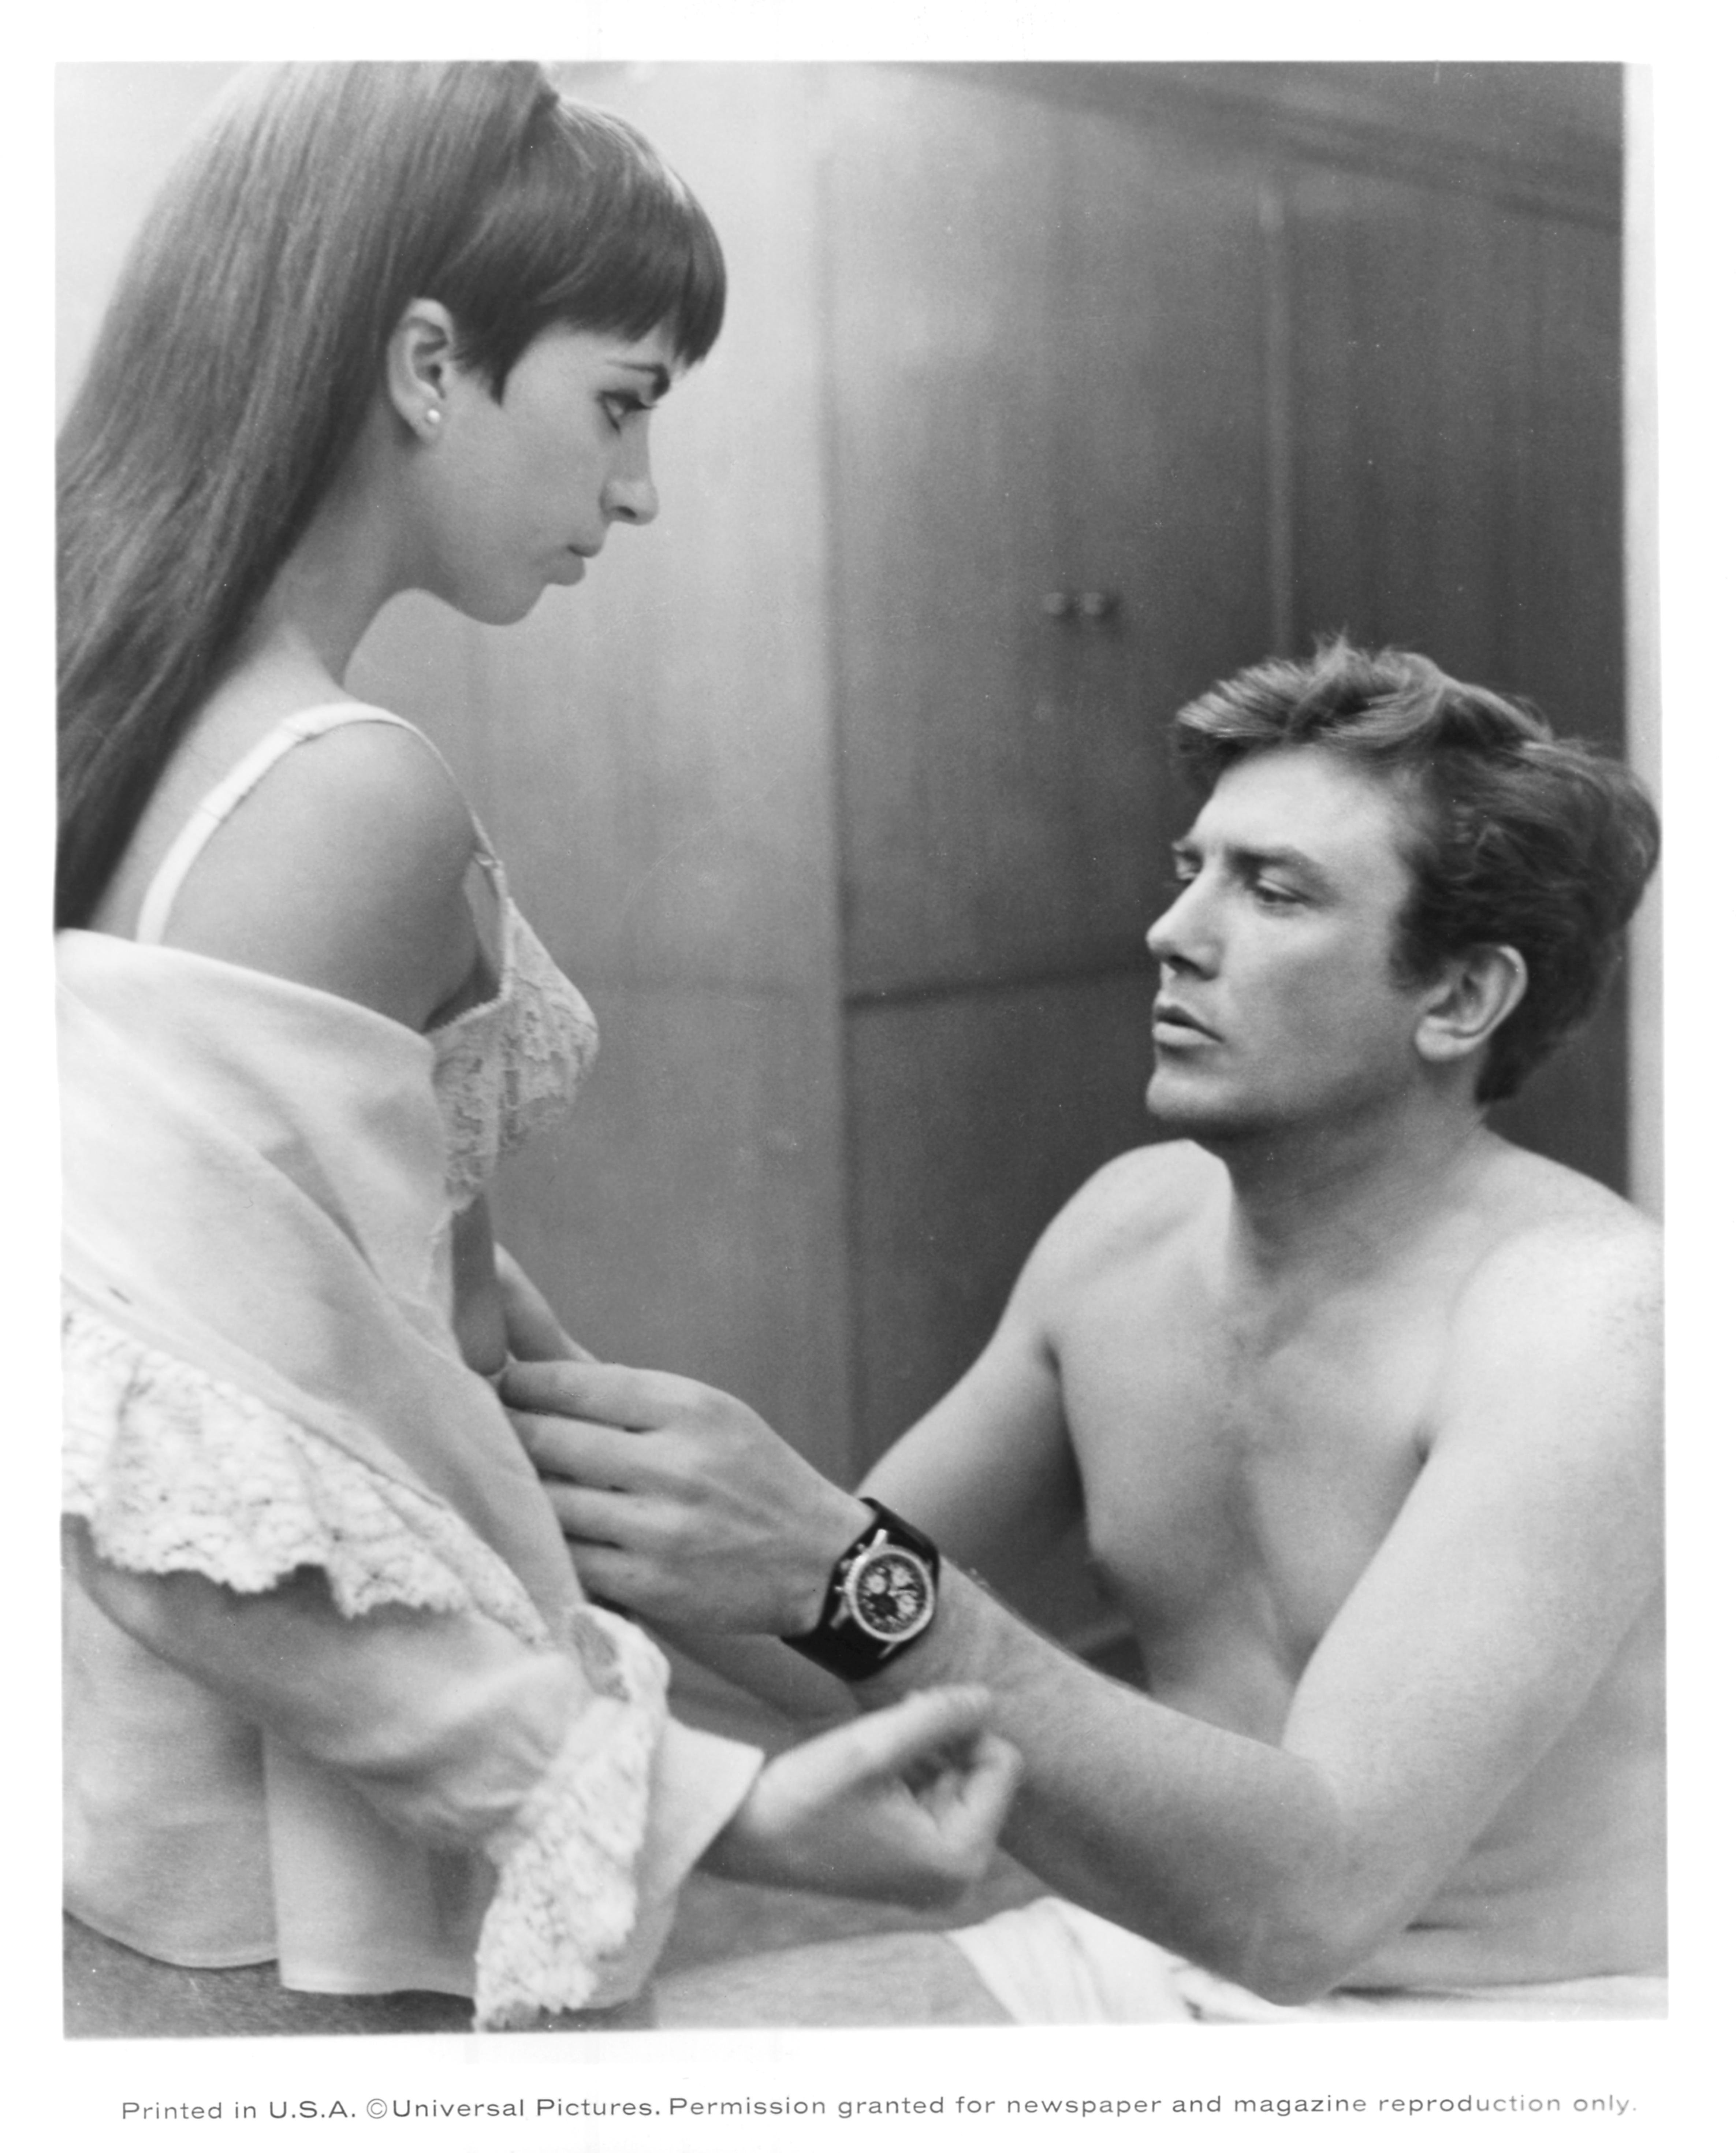 Liza Minnelli et Albert Finney partagent un moment d'intimité dans une scène du film "Charlie Bubbles", capturée en 1967. | Source : Getty Images